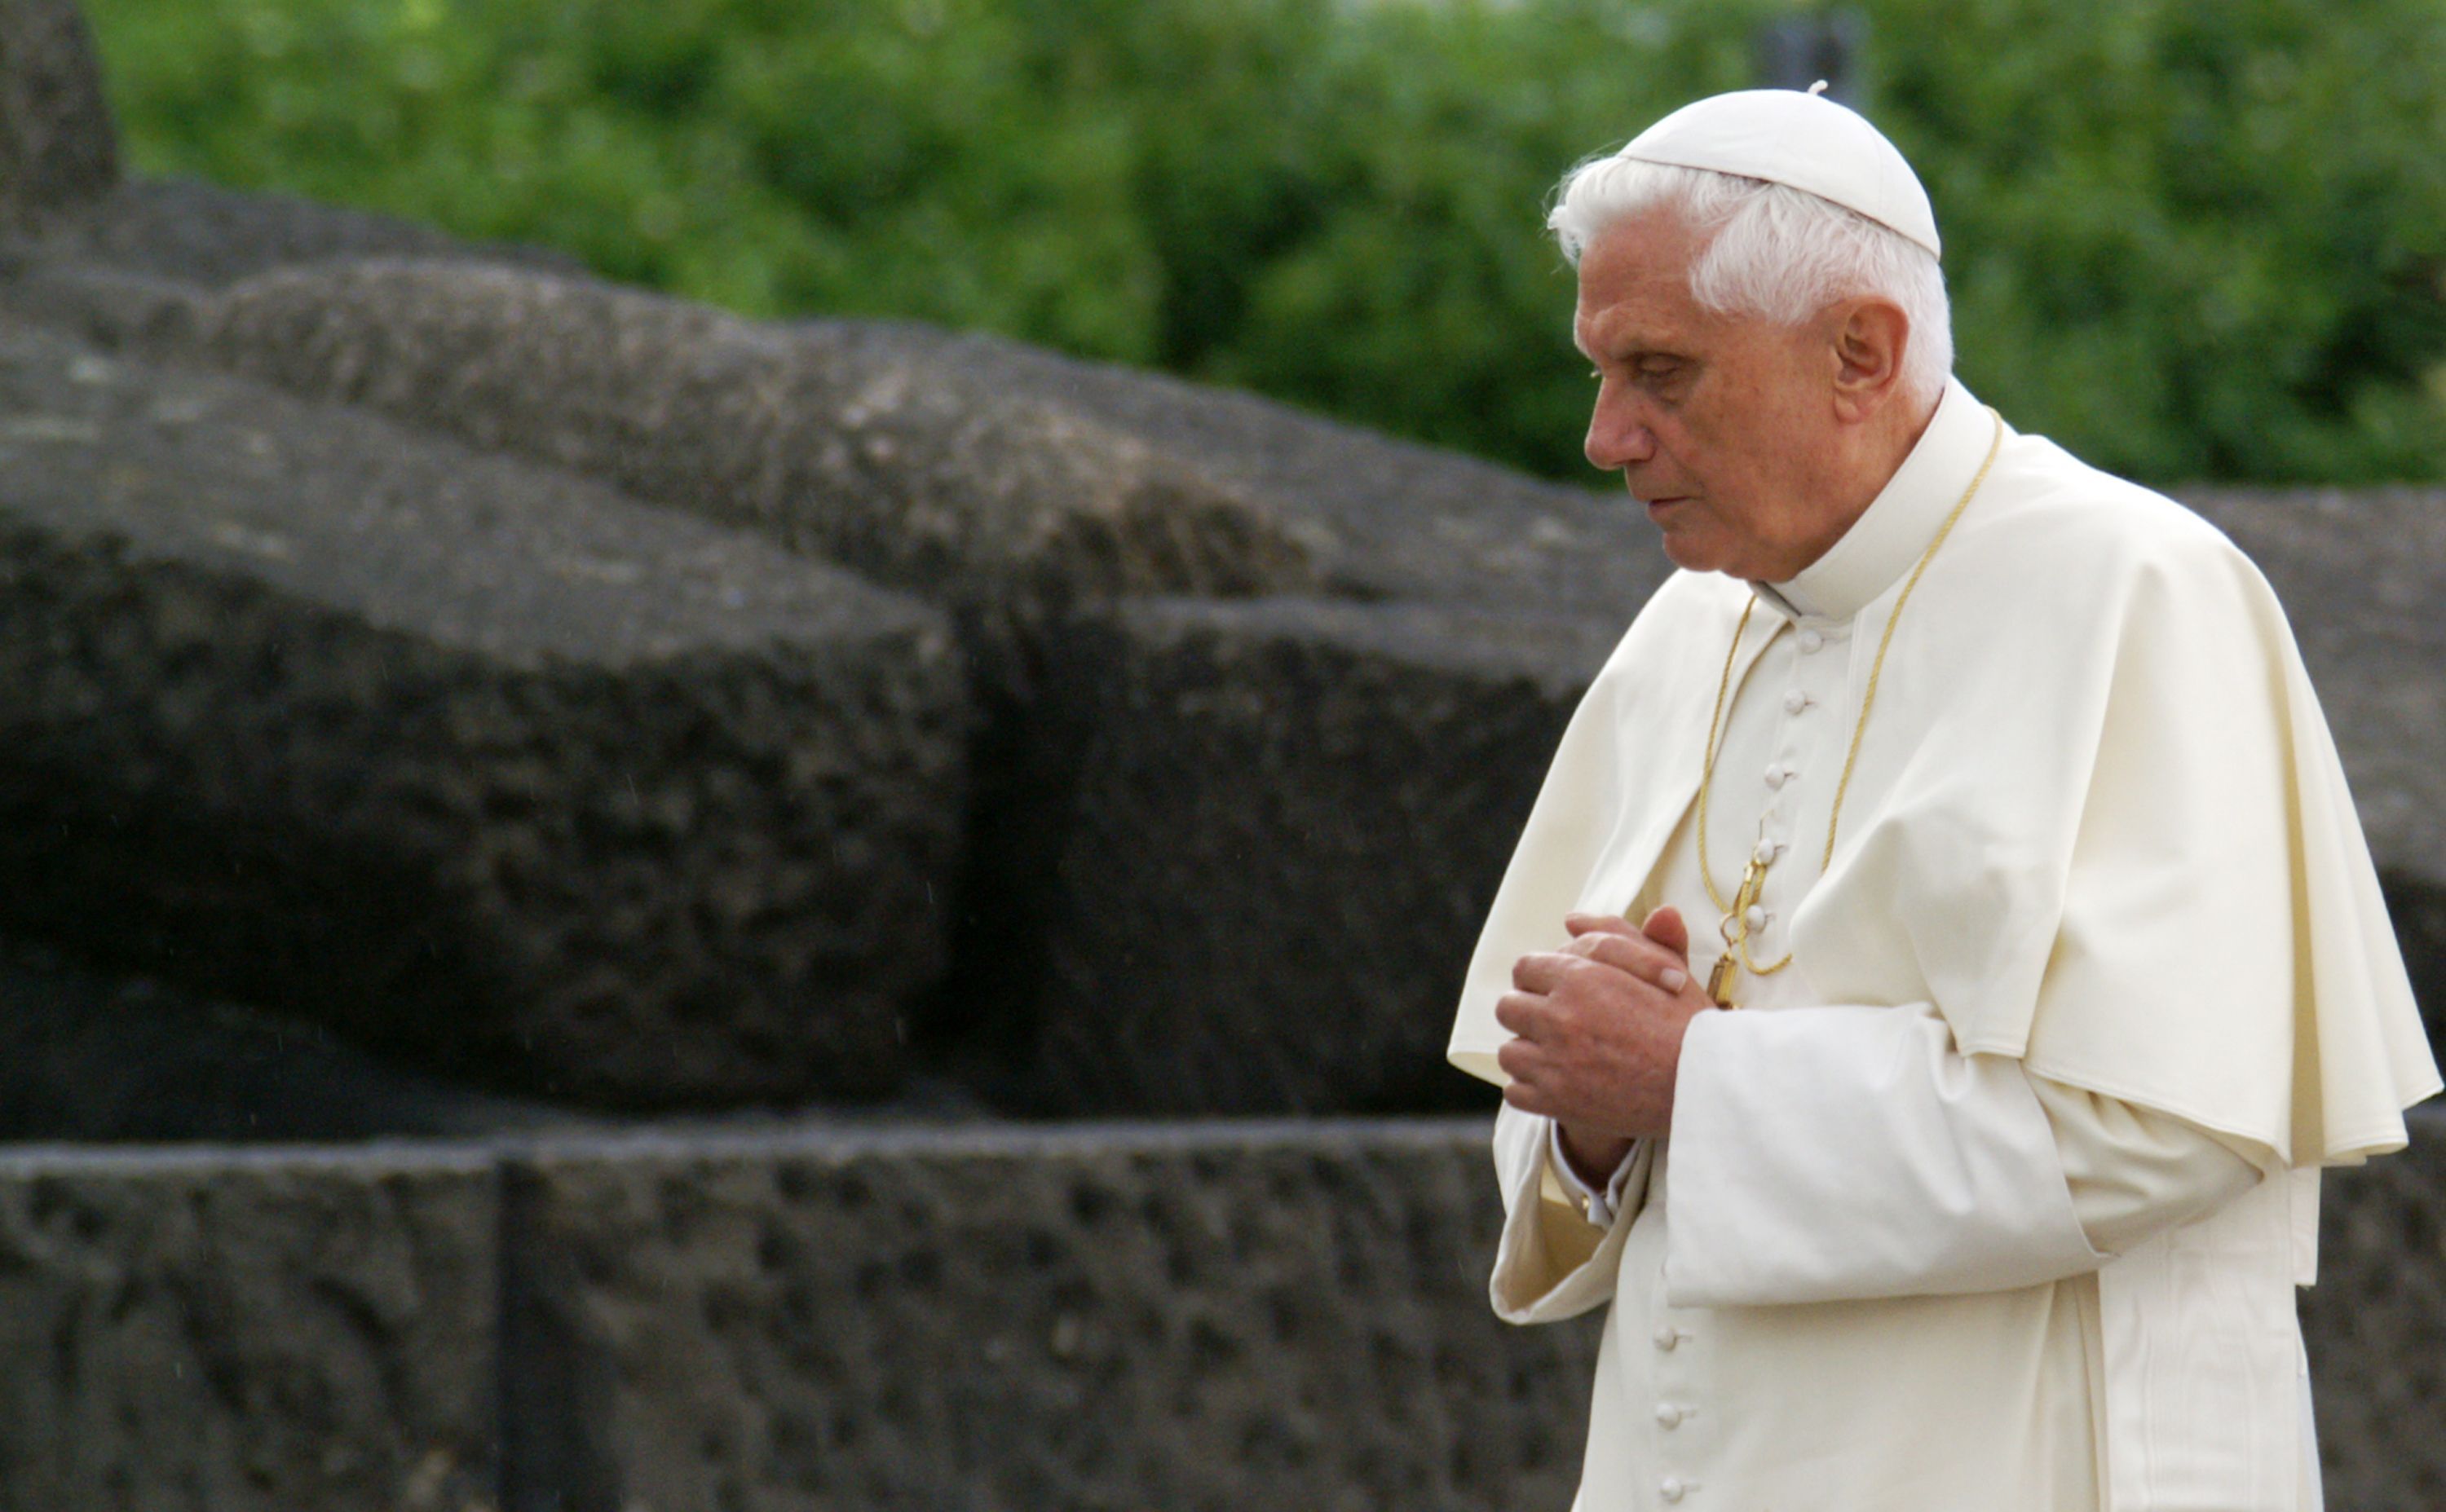 Fundacja im. Benedykta XVI podzieliła się z internautami zdjęciem emerytowanego papieża.